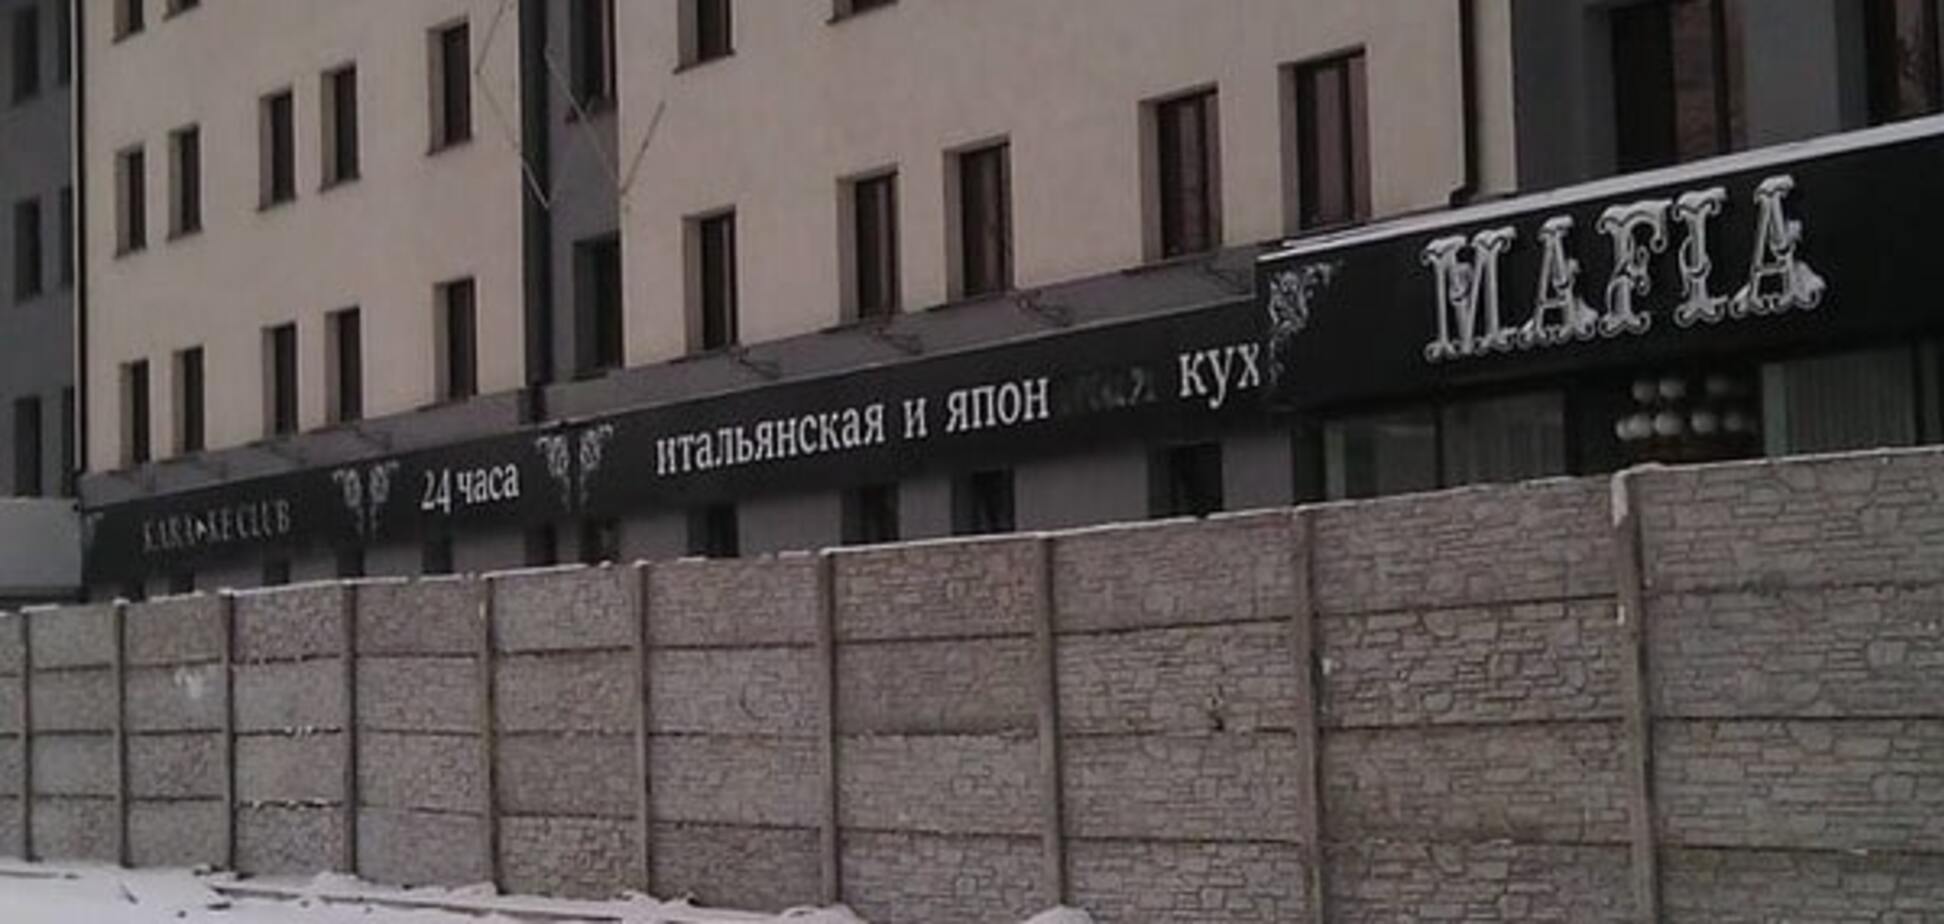 Чтобы в рот не заглядывали: в сети показали, во что превратили ресторан в Луганске. Фотофакт